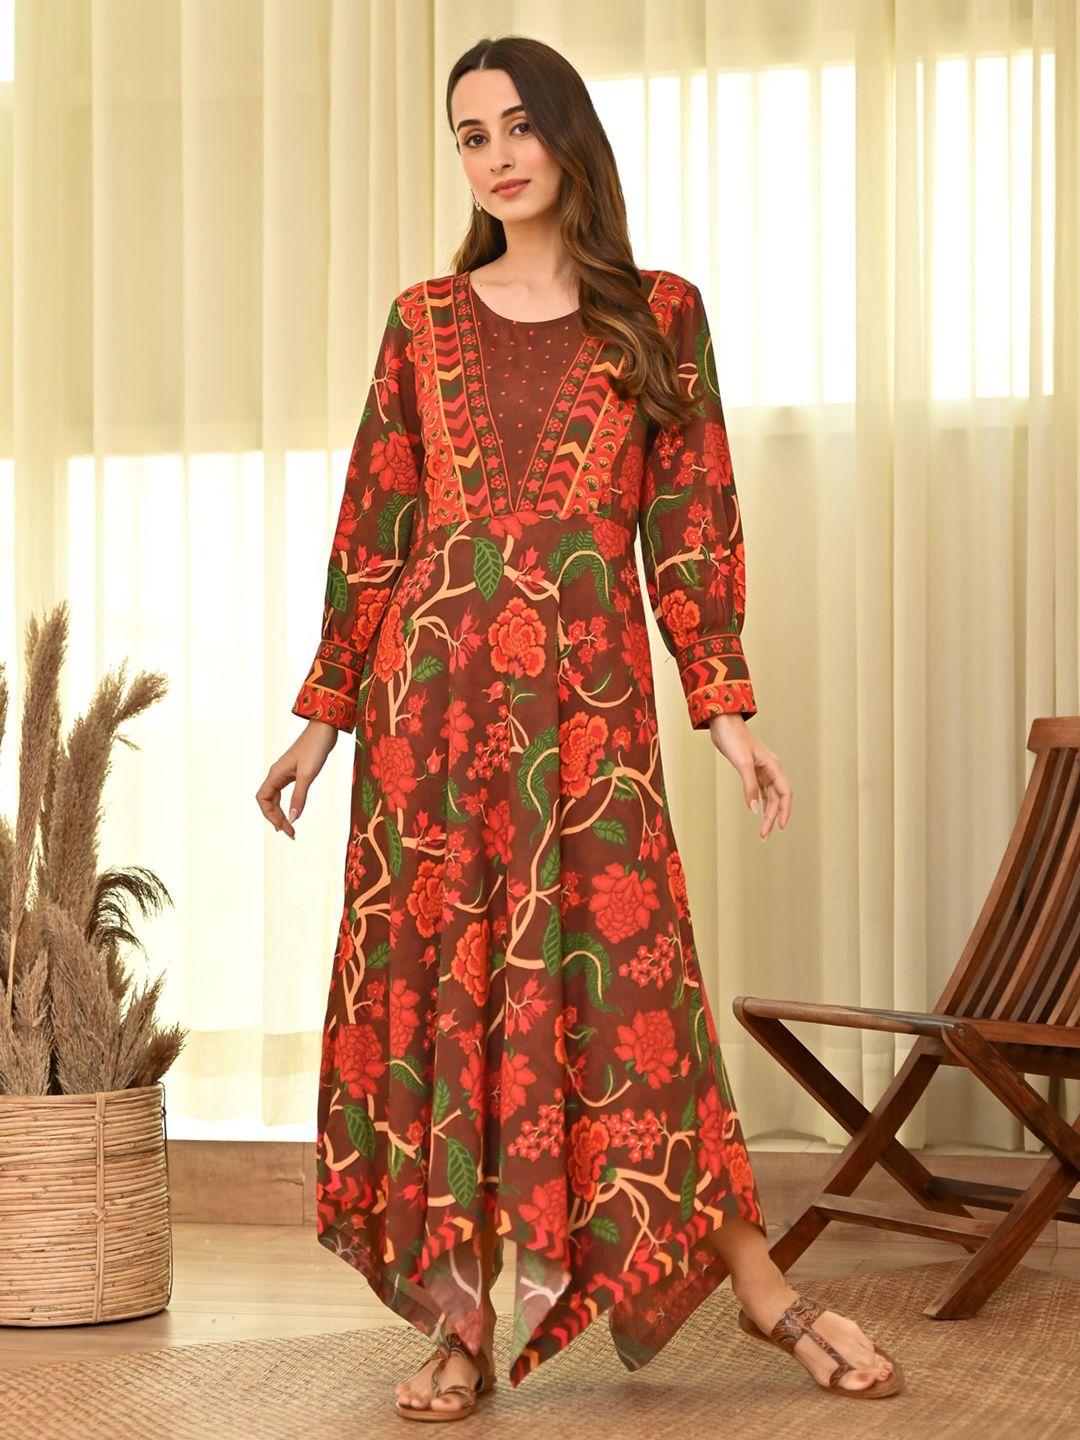 rustorange-floral-printed-bishop-sleeves-asymmetric-a-line-ethnic-dress